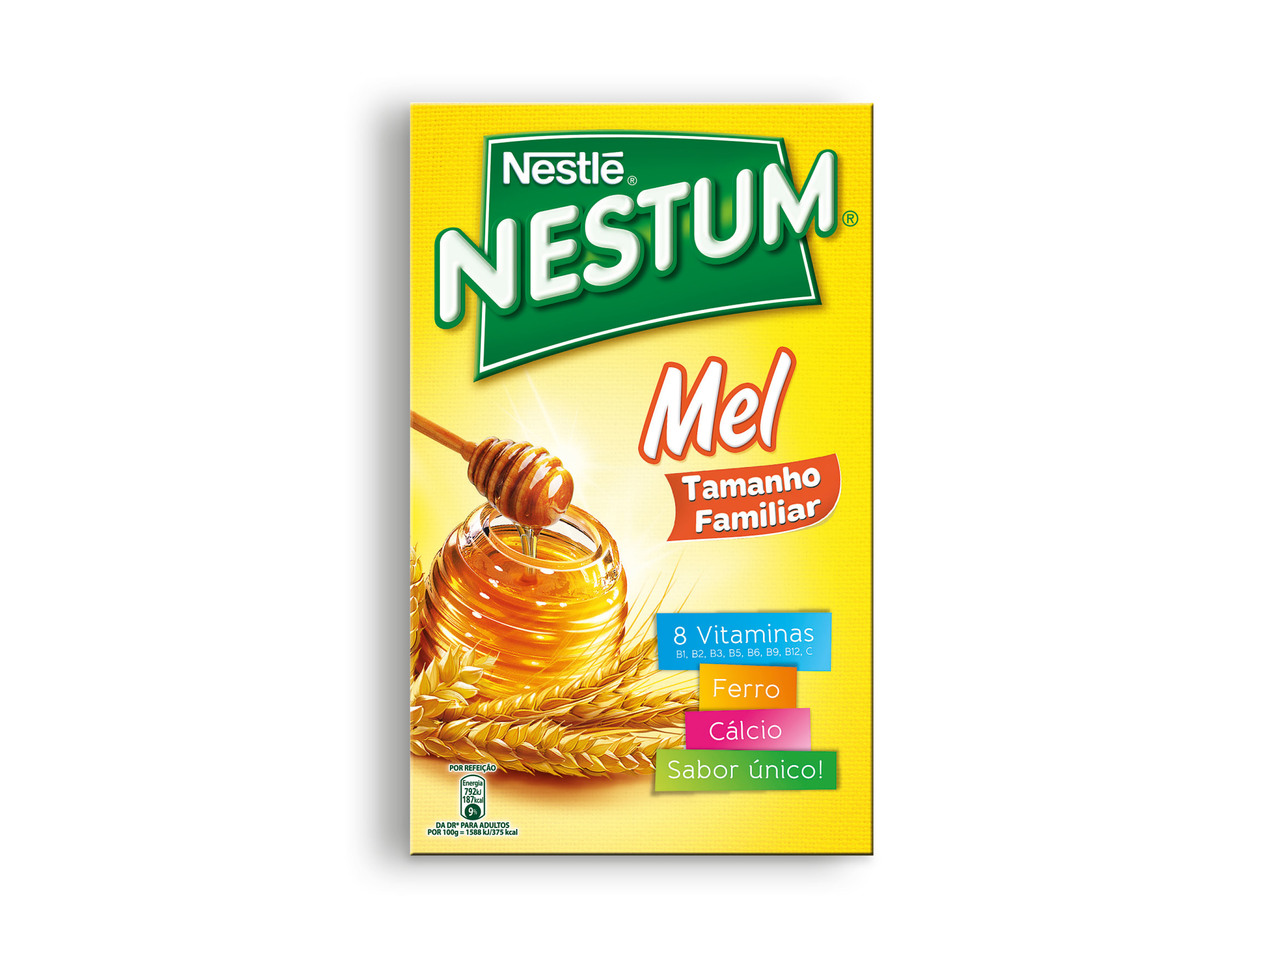 NESTUM(R) Flocos de Cereais com Mel